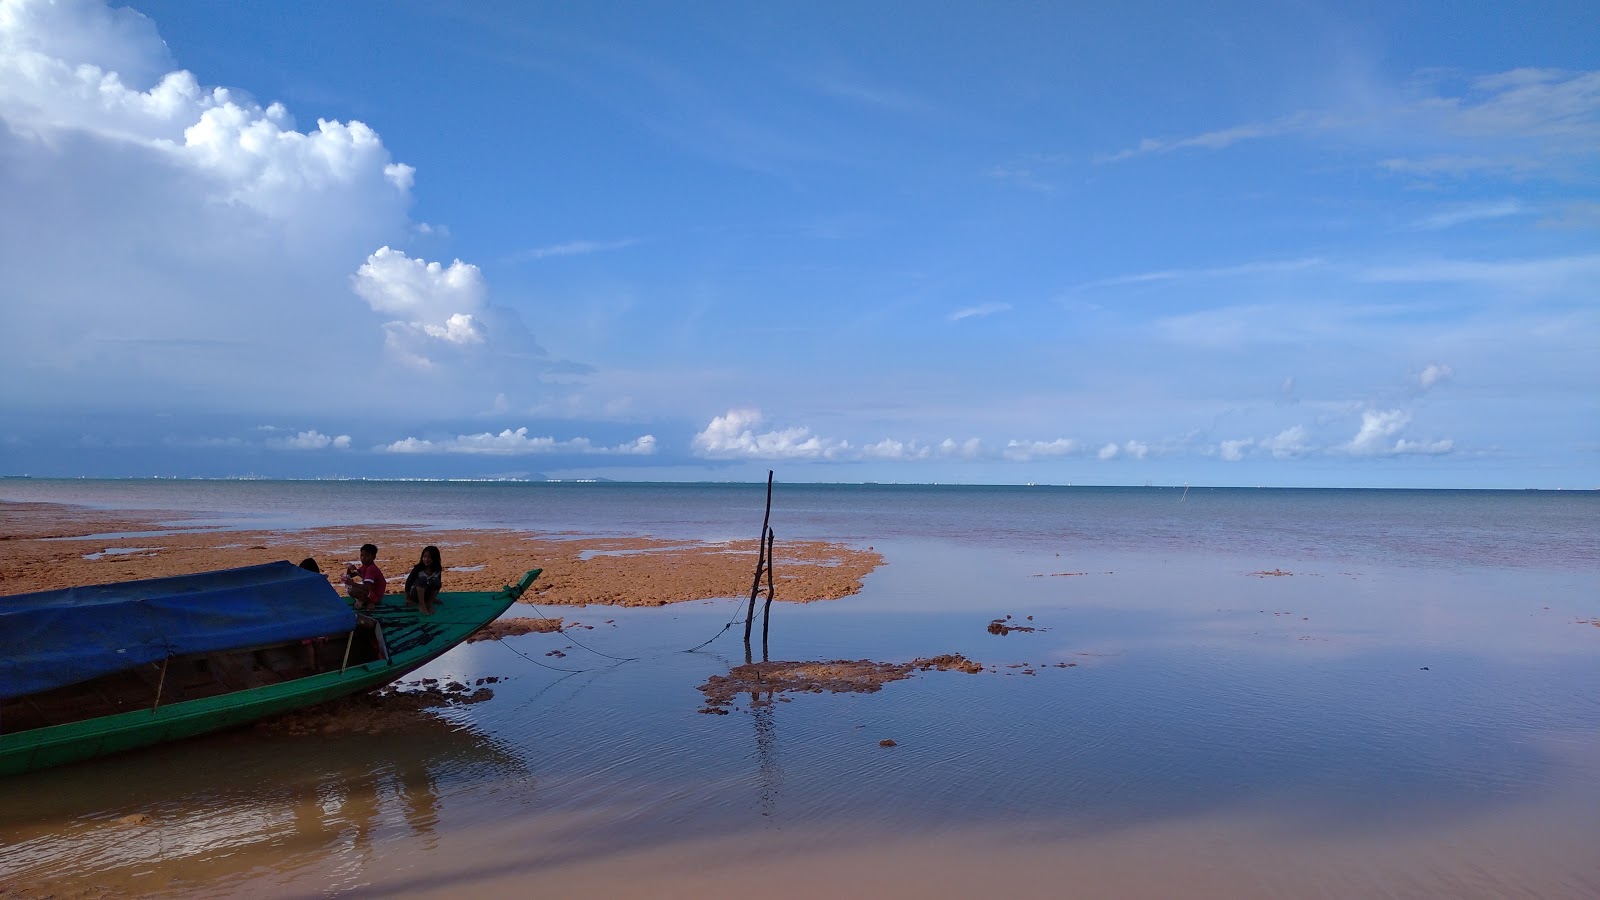 Zdjęcie Pantai Tj. Bemban obszar udogodnień